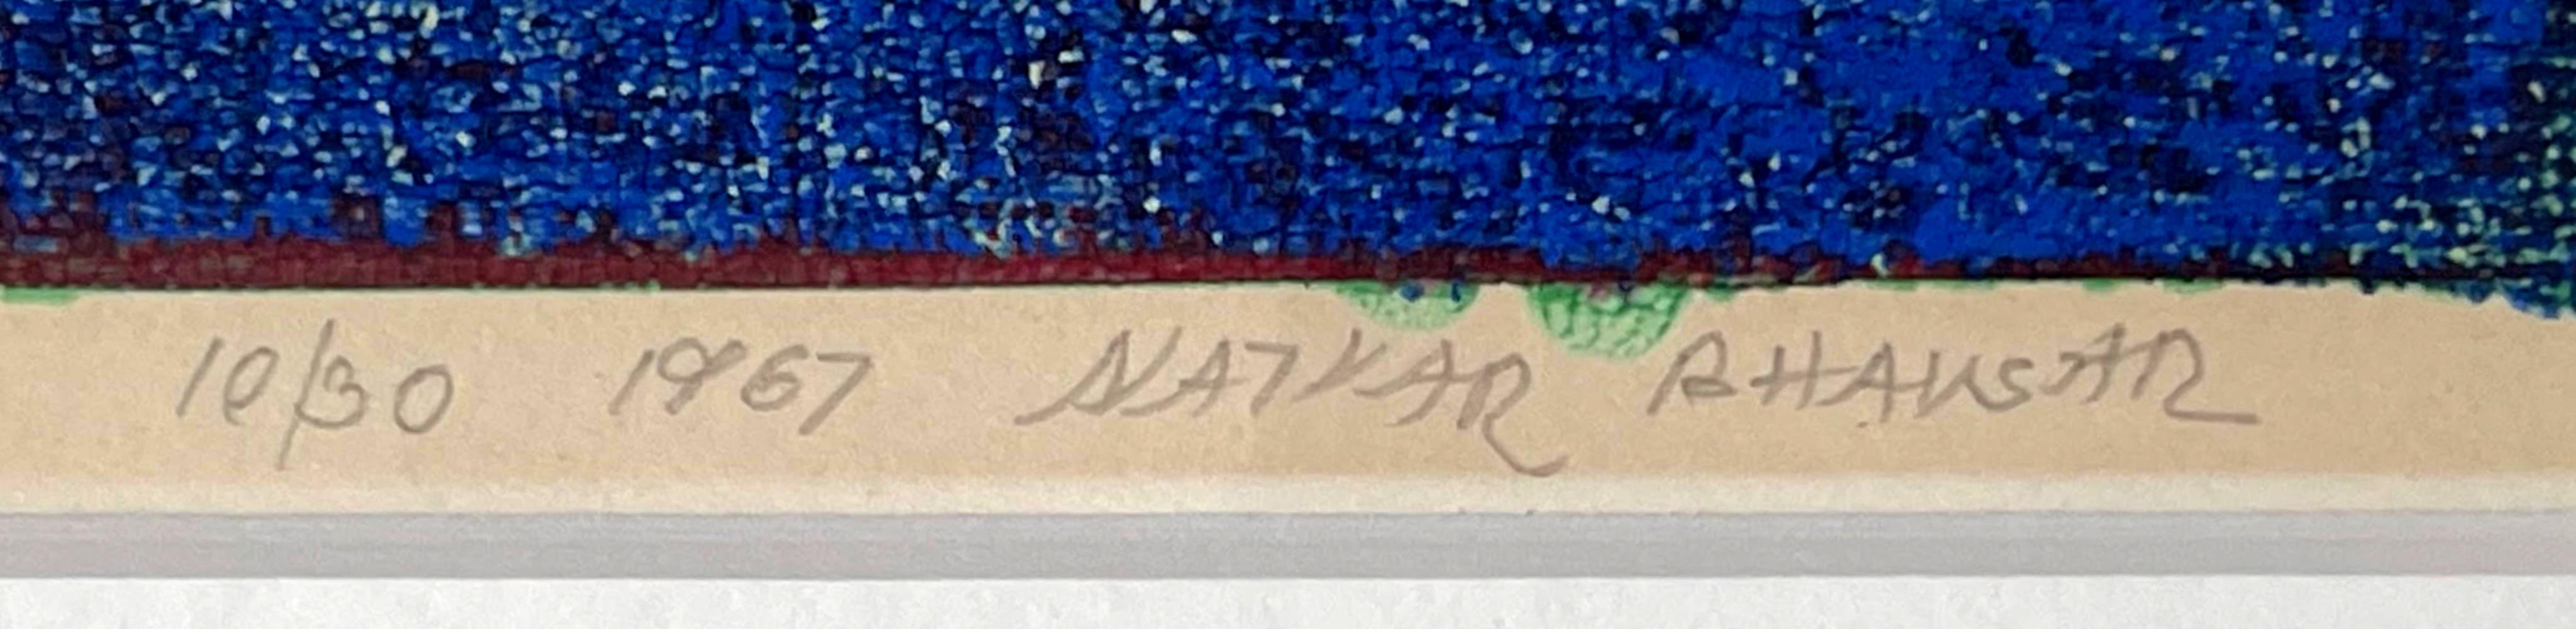 Natvar Bhavsar
Abstraction sans titre du milieu des années 1960, 1967
Sérigraphie
Signé au crayon, daté et numéroté 10/30 par Natvar Bhavsar au recto.
Cadre inclus : Elegamment encadré dans un cadre en bois contemporain de qualité muséale avec